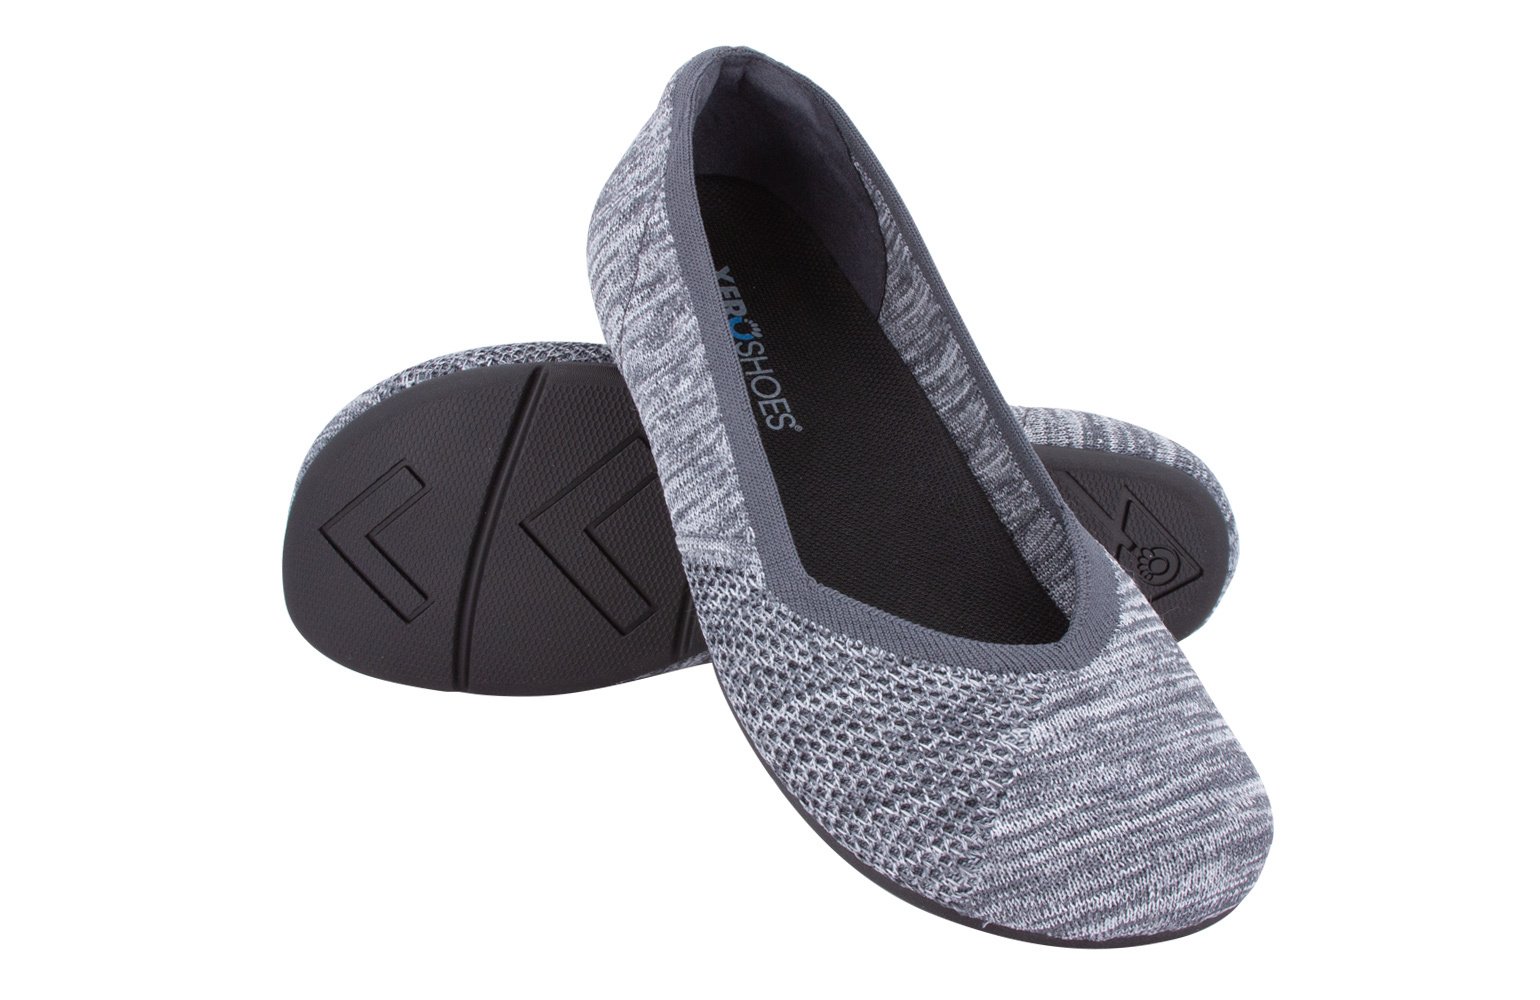 Xero Shoes, Phoenix Knit, PHX-KGRY, gray, dames, maat 38 eu